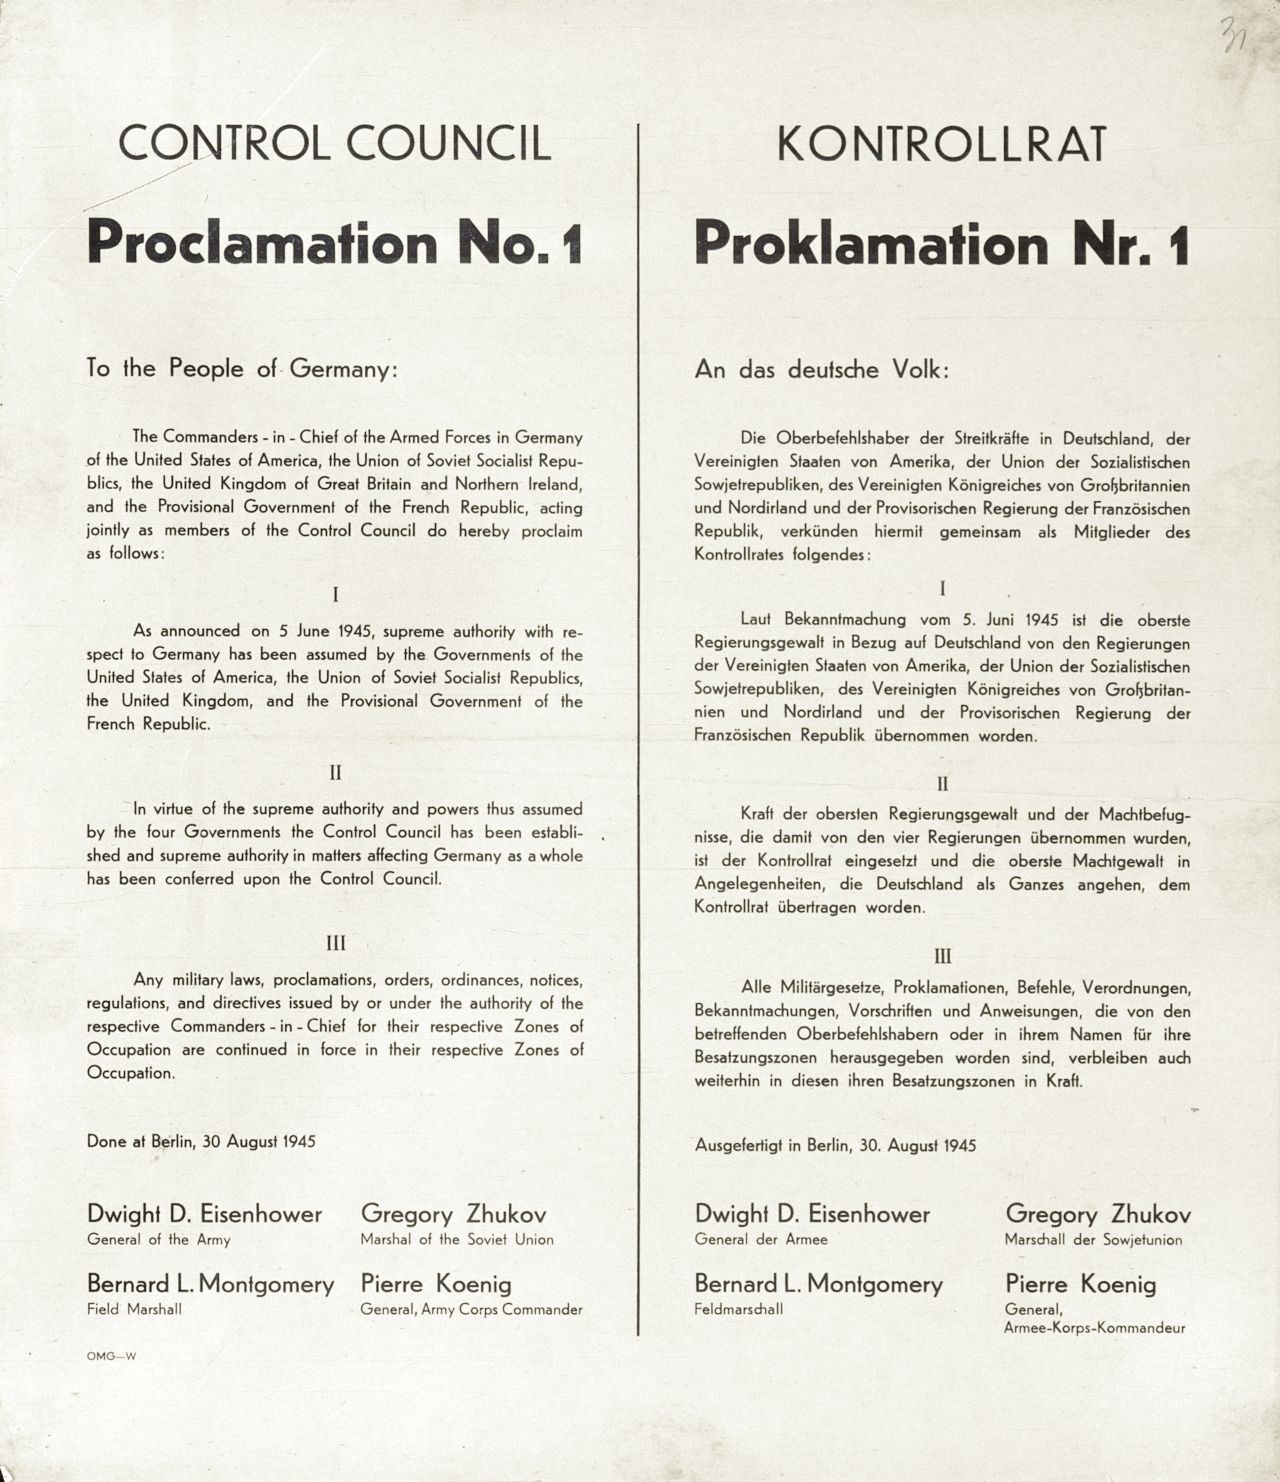 Proklamation Nr. 1 des Alliierten Kontrollrats vom 30. August 1945